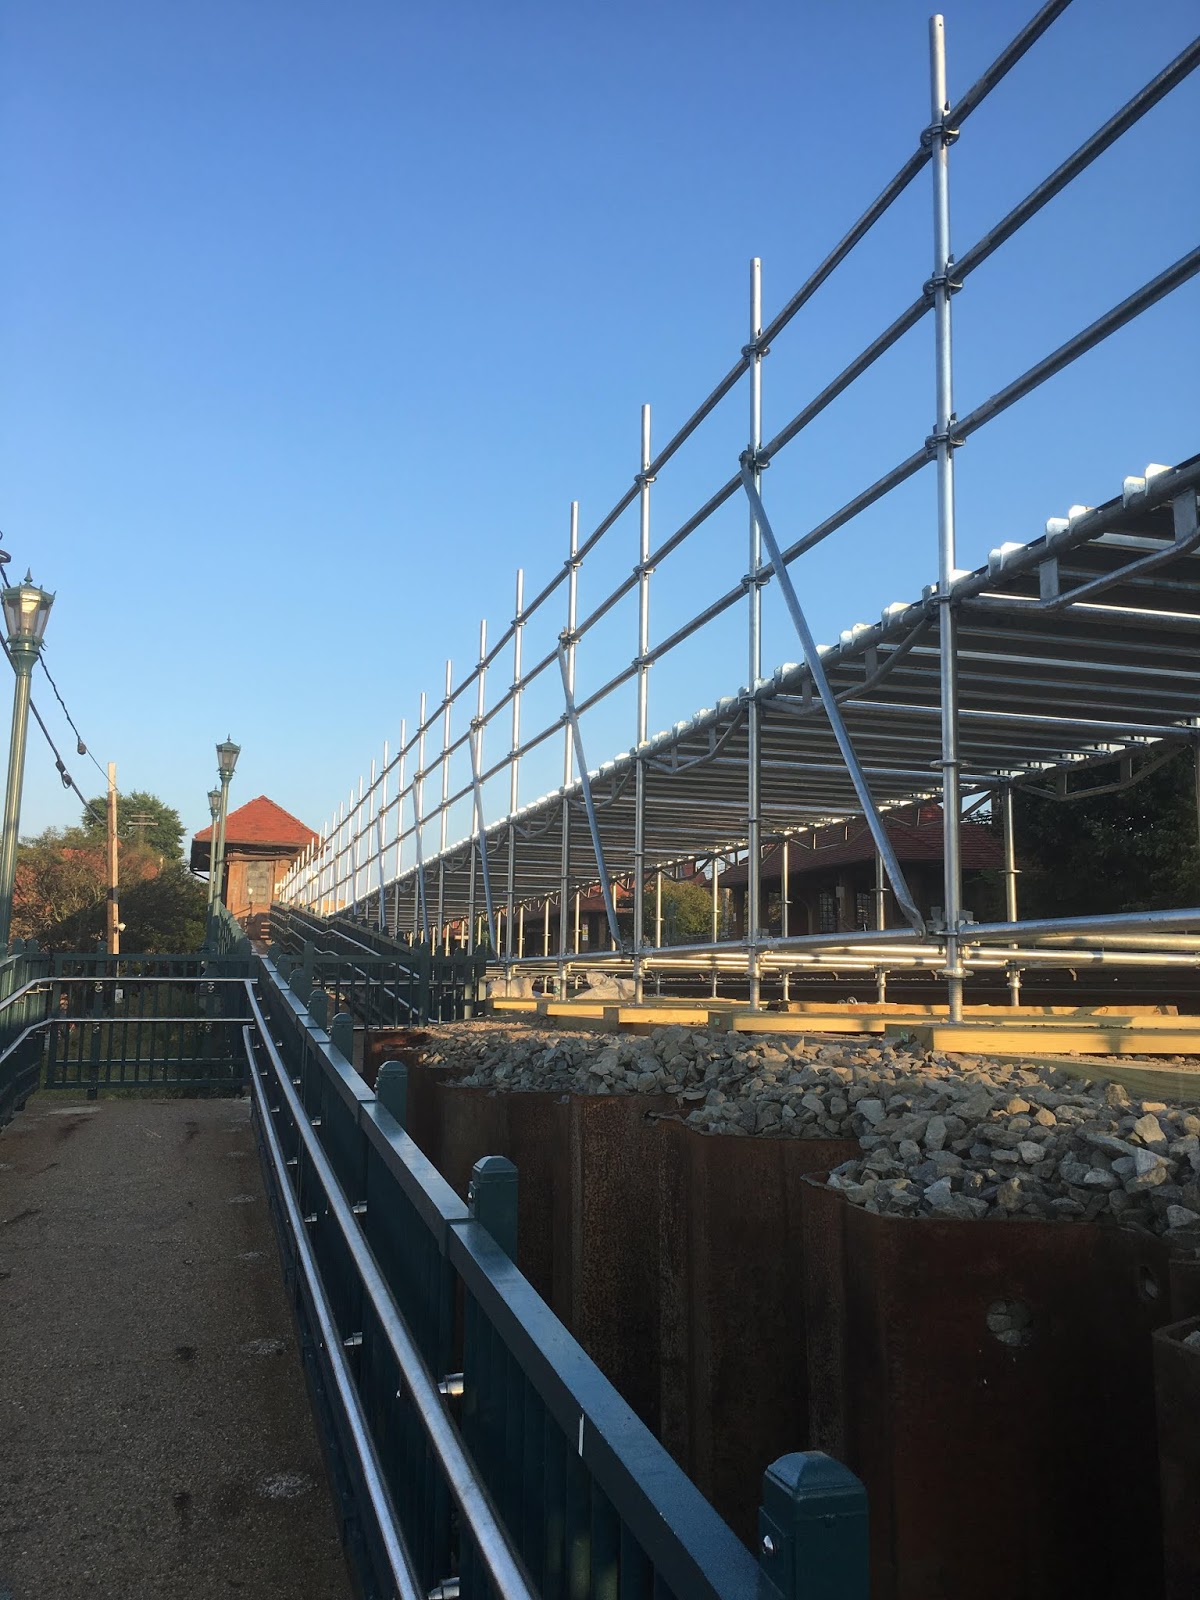 Edge Of The City Forest Hills Lirr Platform Expansion Underway